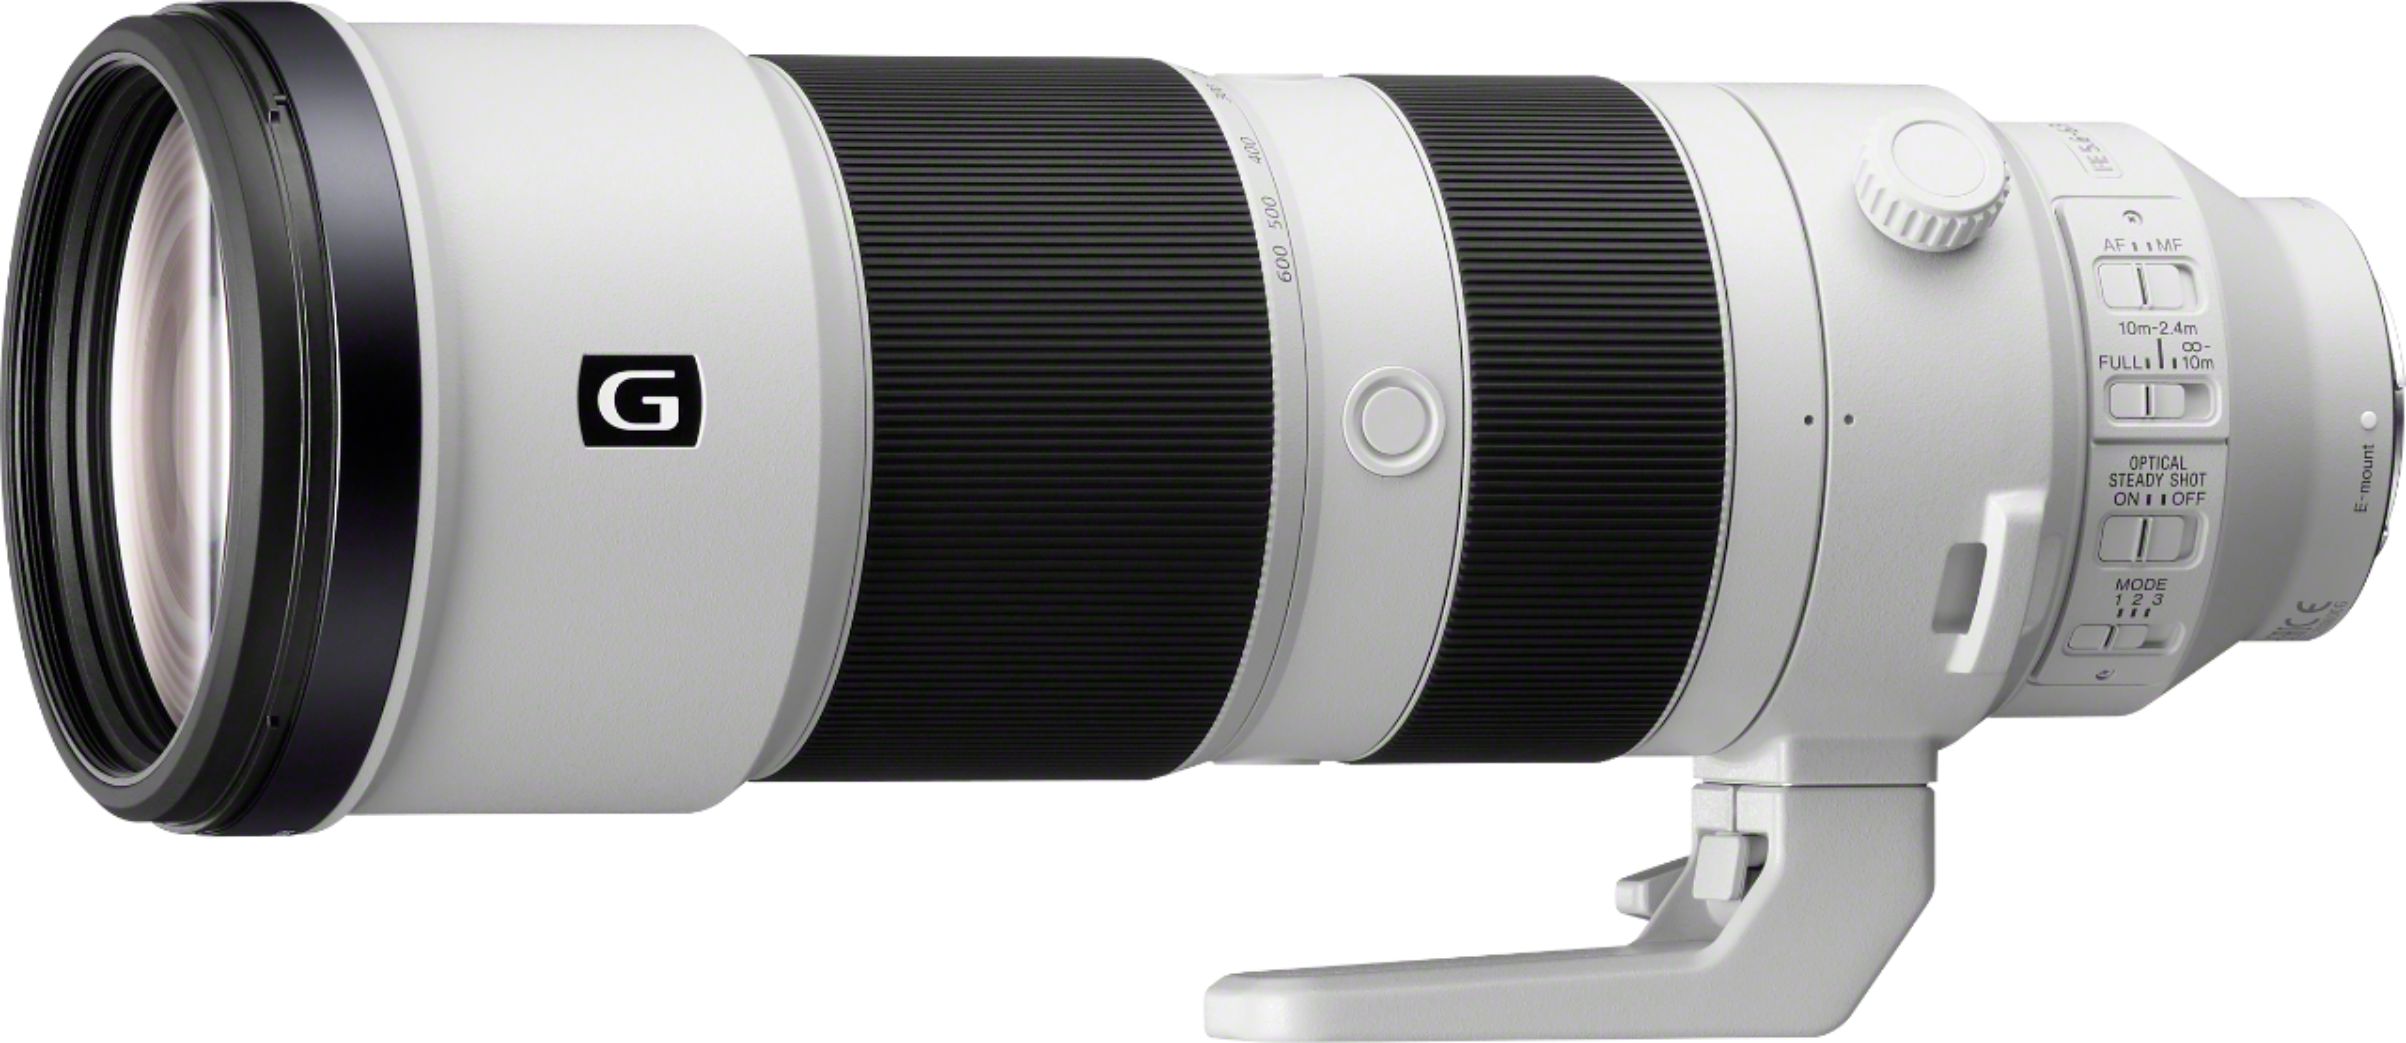 Pelmel Bakken identificatie Sony 200-600mm f/5.6-6.3 G OSS Optical Telephoto Zoom Lens White/Black  SEL200600G - Best Buy